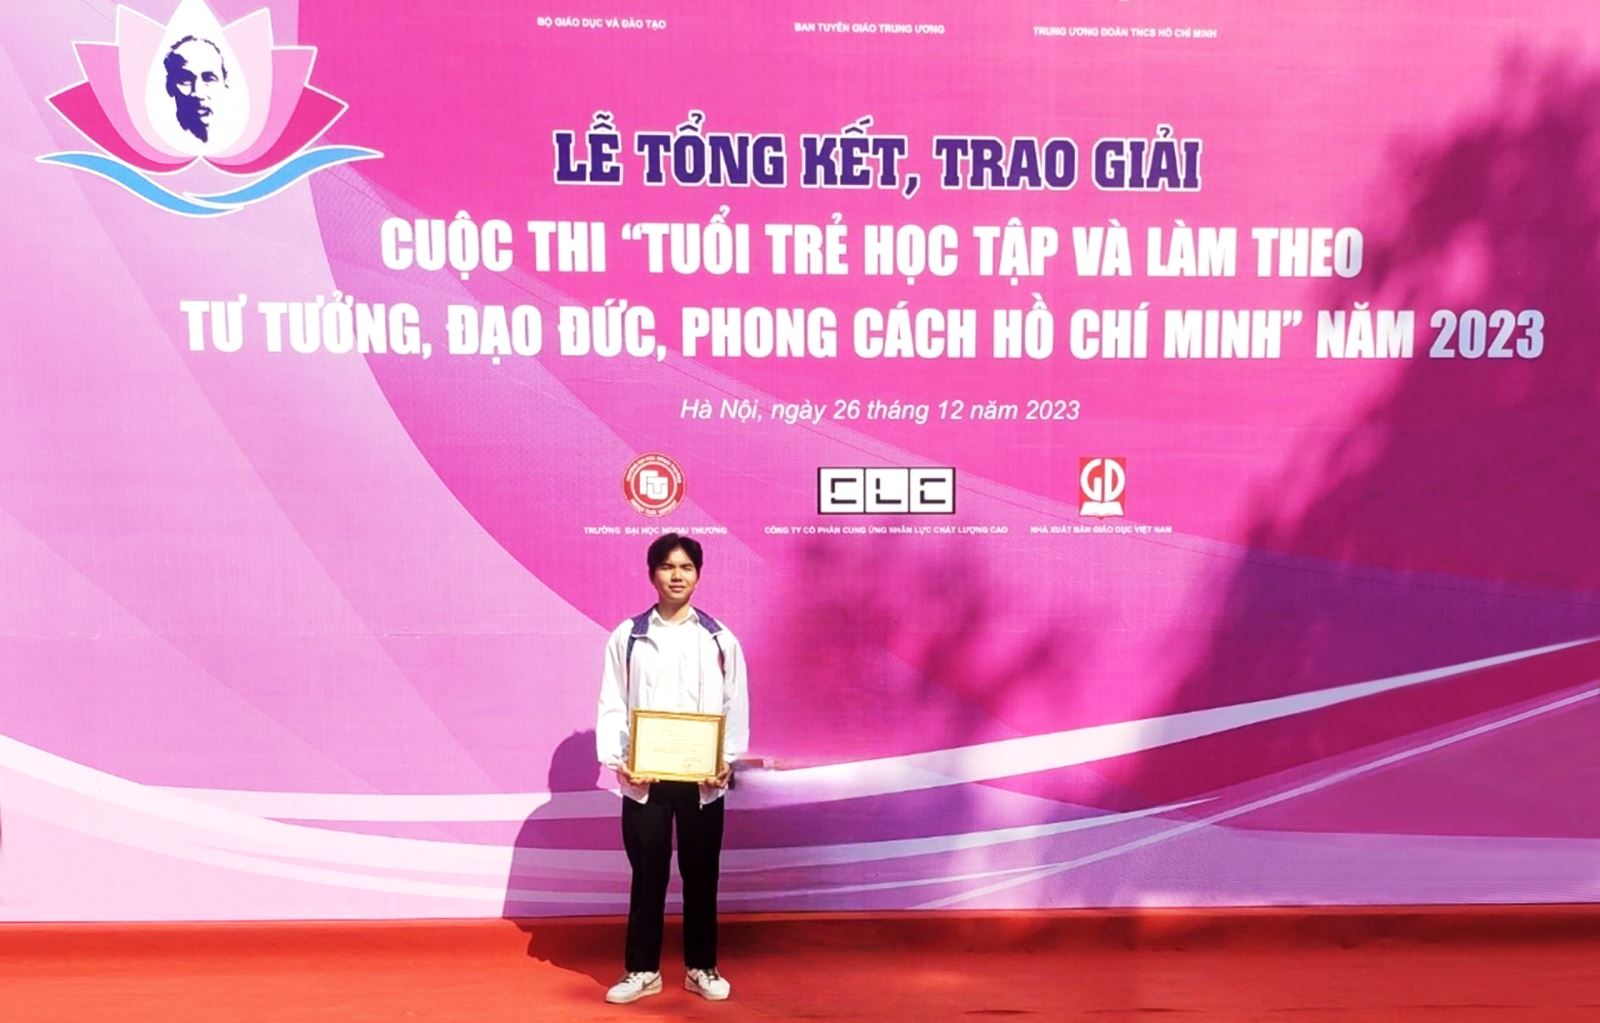 Học sinh trường THPT Kon Tum giành giải Tư cuộc thi ‘Tuổi trẻ học tập và làm theo tư tưởng, đạo đức, phong cách Hồ Chí Minh” năm 2023